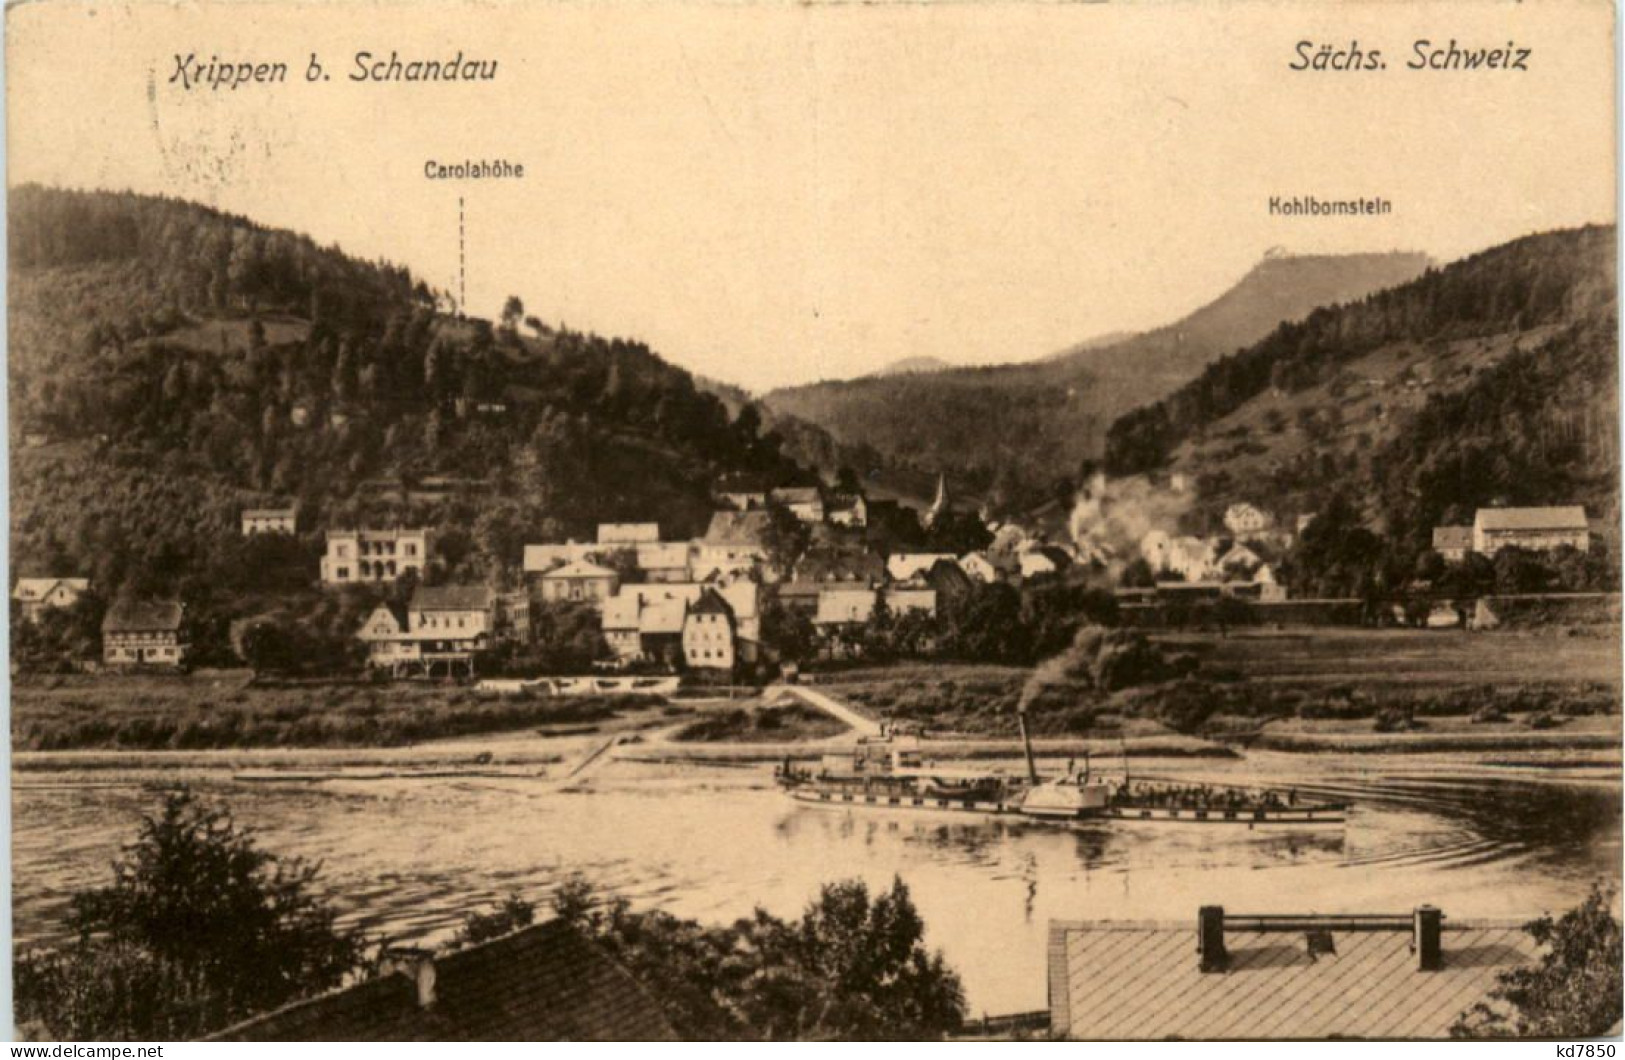 Sächs. Schweiz, Krippen Bei Schandau - Bad Schandau